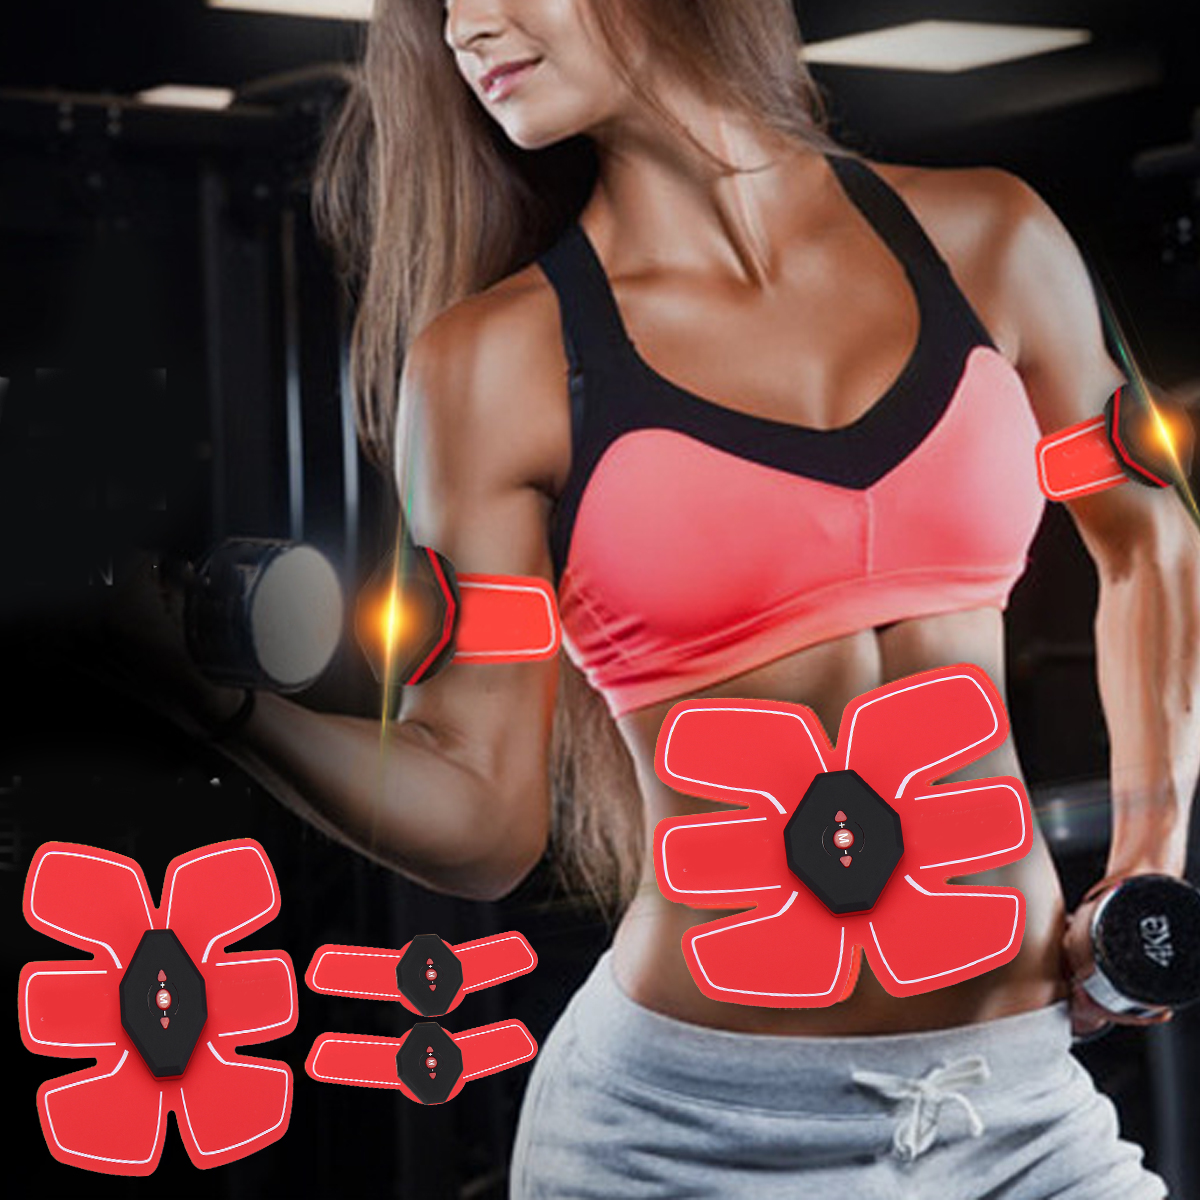 Yunai-Unisex-Abdominal-Toning-Arm-Muscle-Stimulator-Belt-EMS-Training-Body-Exercise-Trainer-Toner-AB-1638500-4